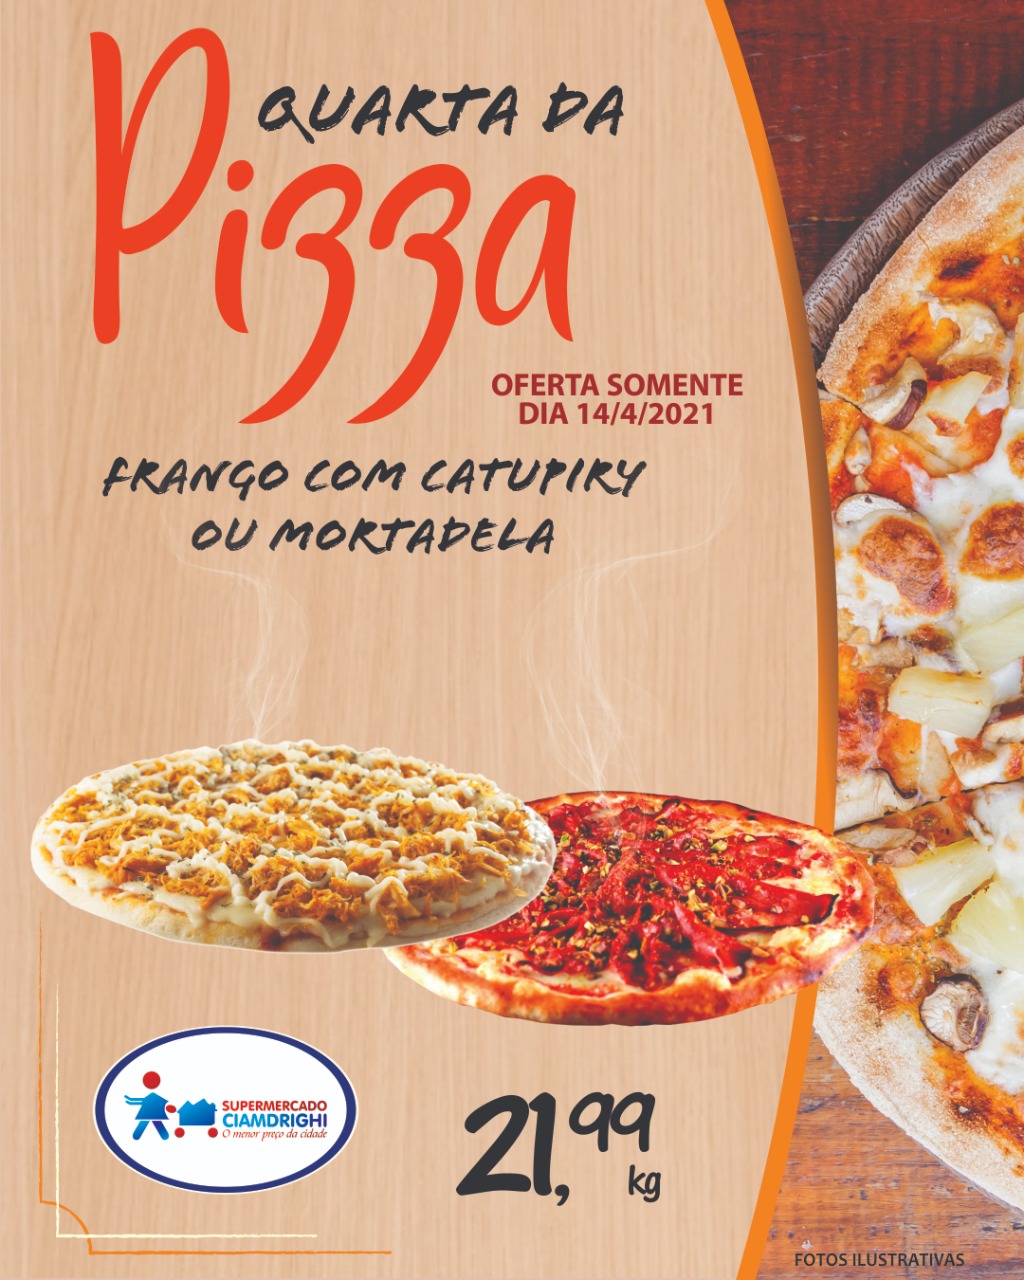 Ciamdrighi tem ofertas em pizzas, hortifrúti e pelo delivery para hoje